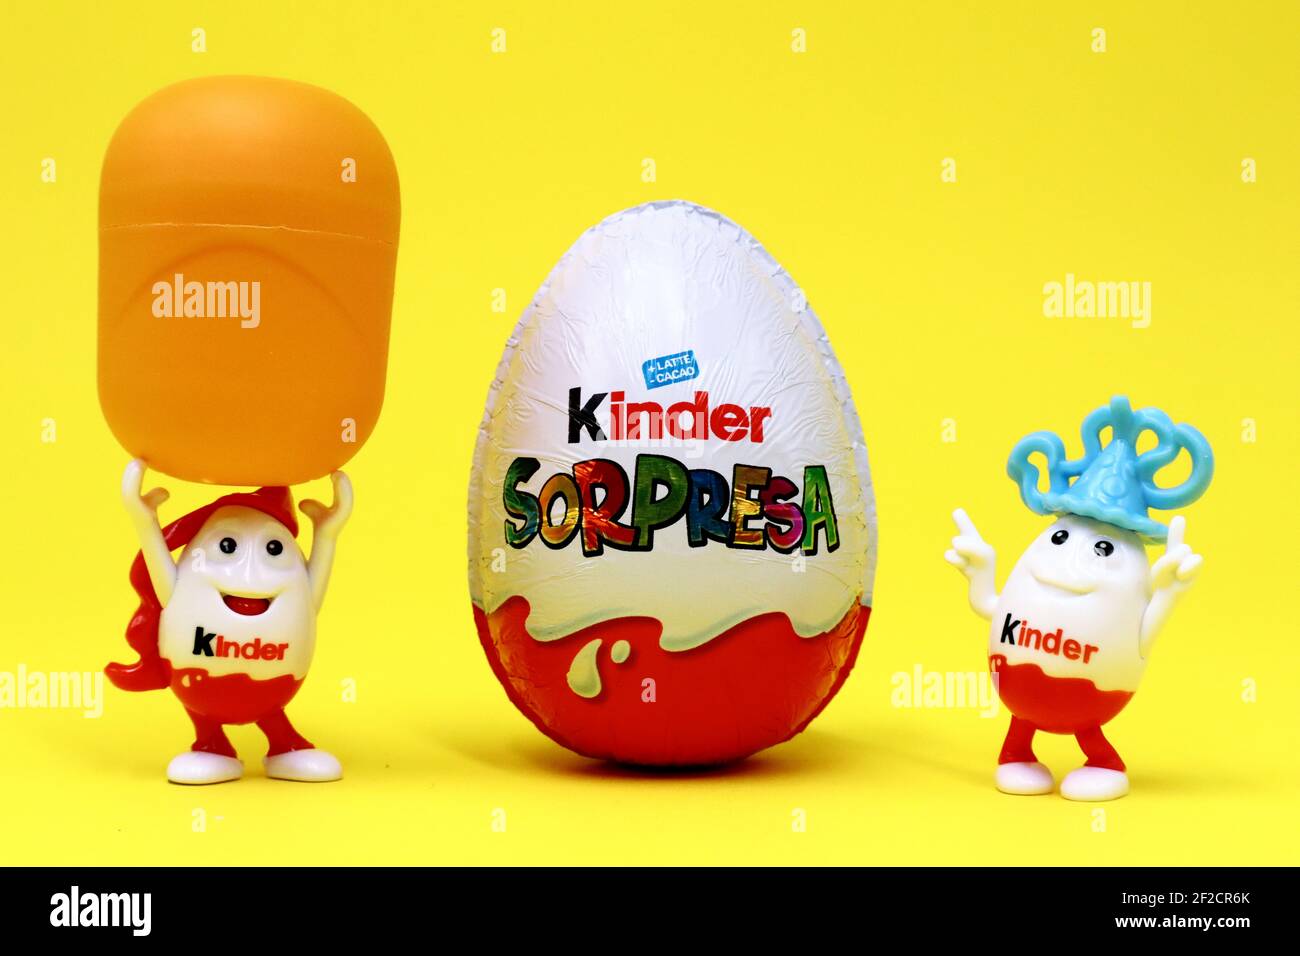 Kinder Sorpresa Huevitos/ Kinder Suprise Eggs